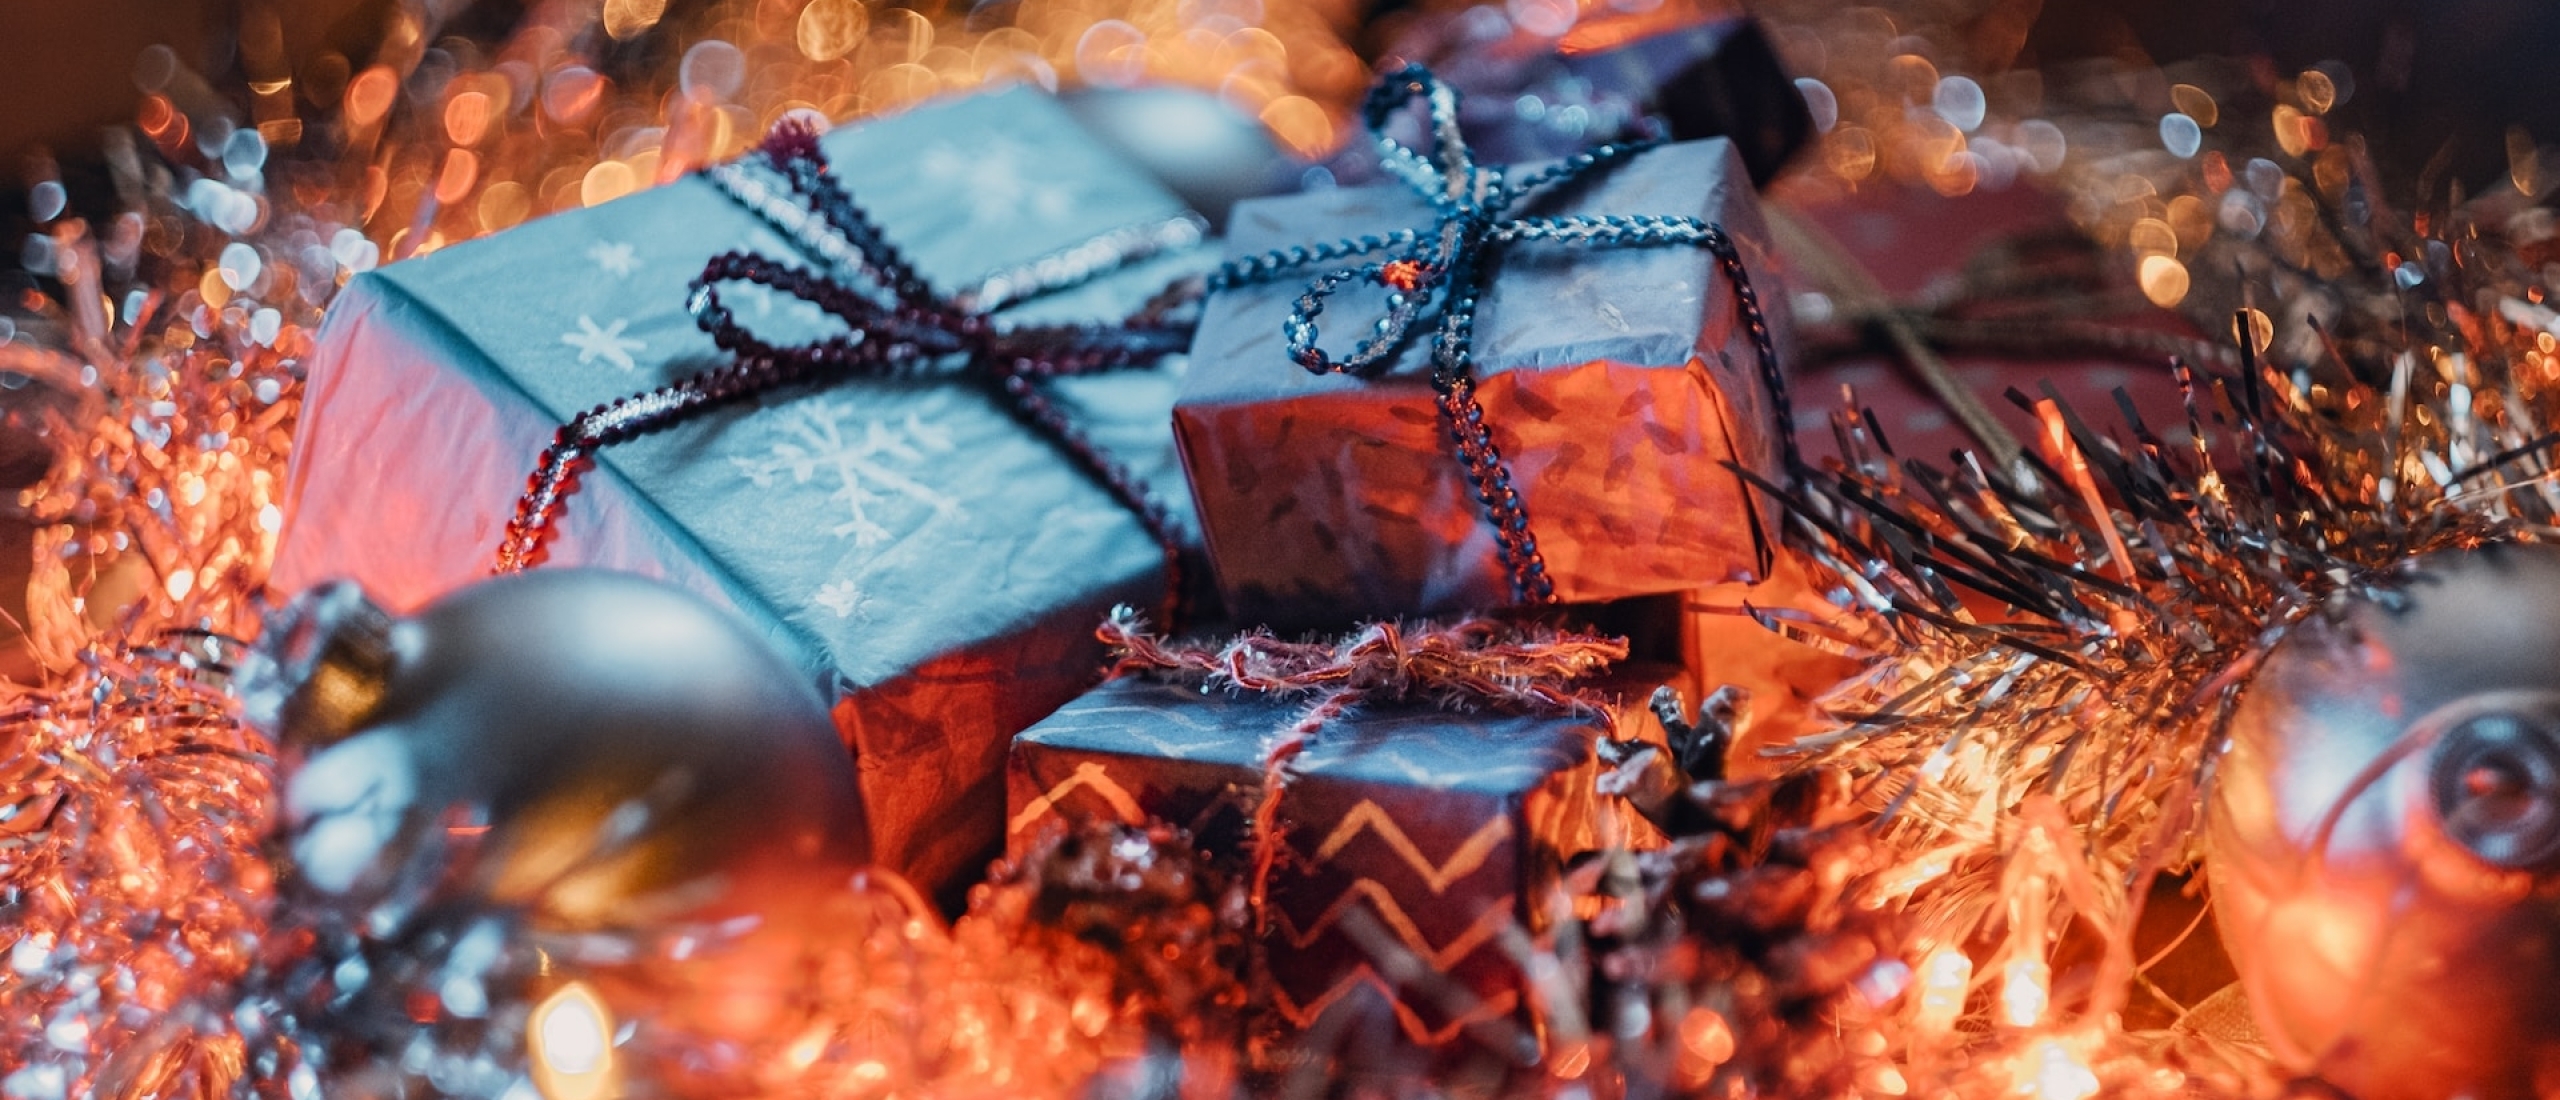 Hoe je duurzame kerstpakketten kunt samenstellen